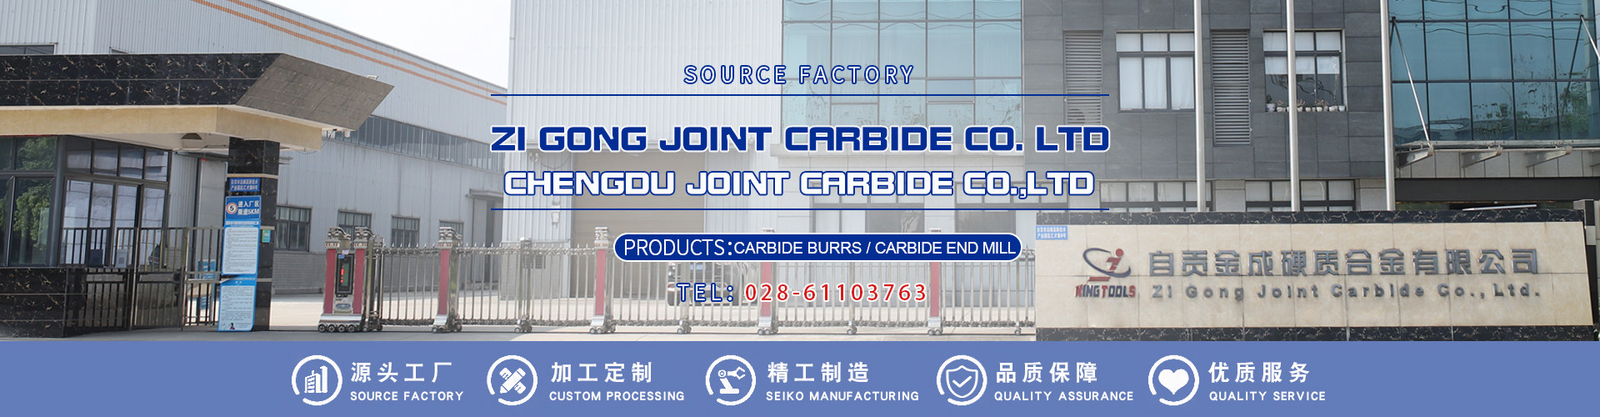 kwaliteit carbide roterende braam fabriek